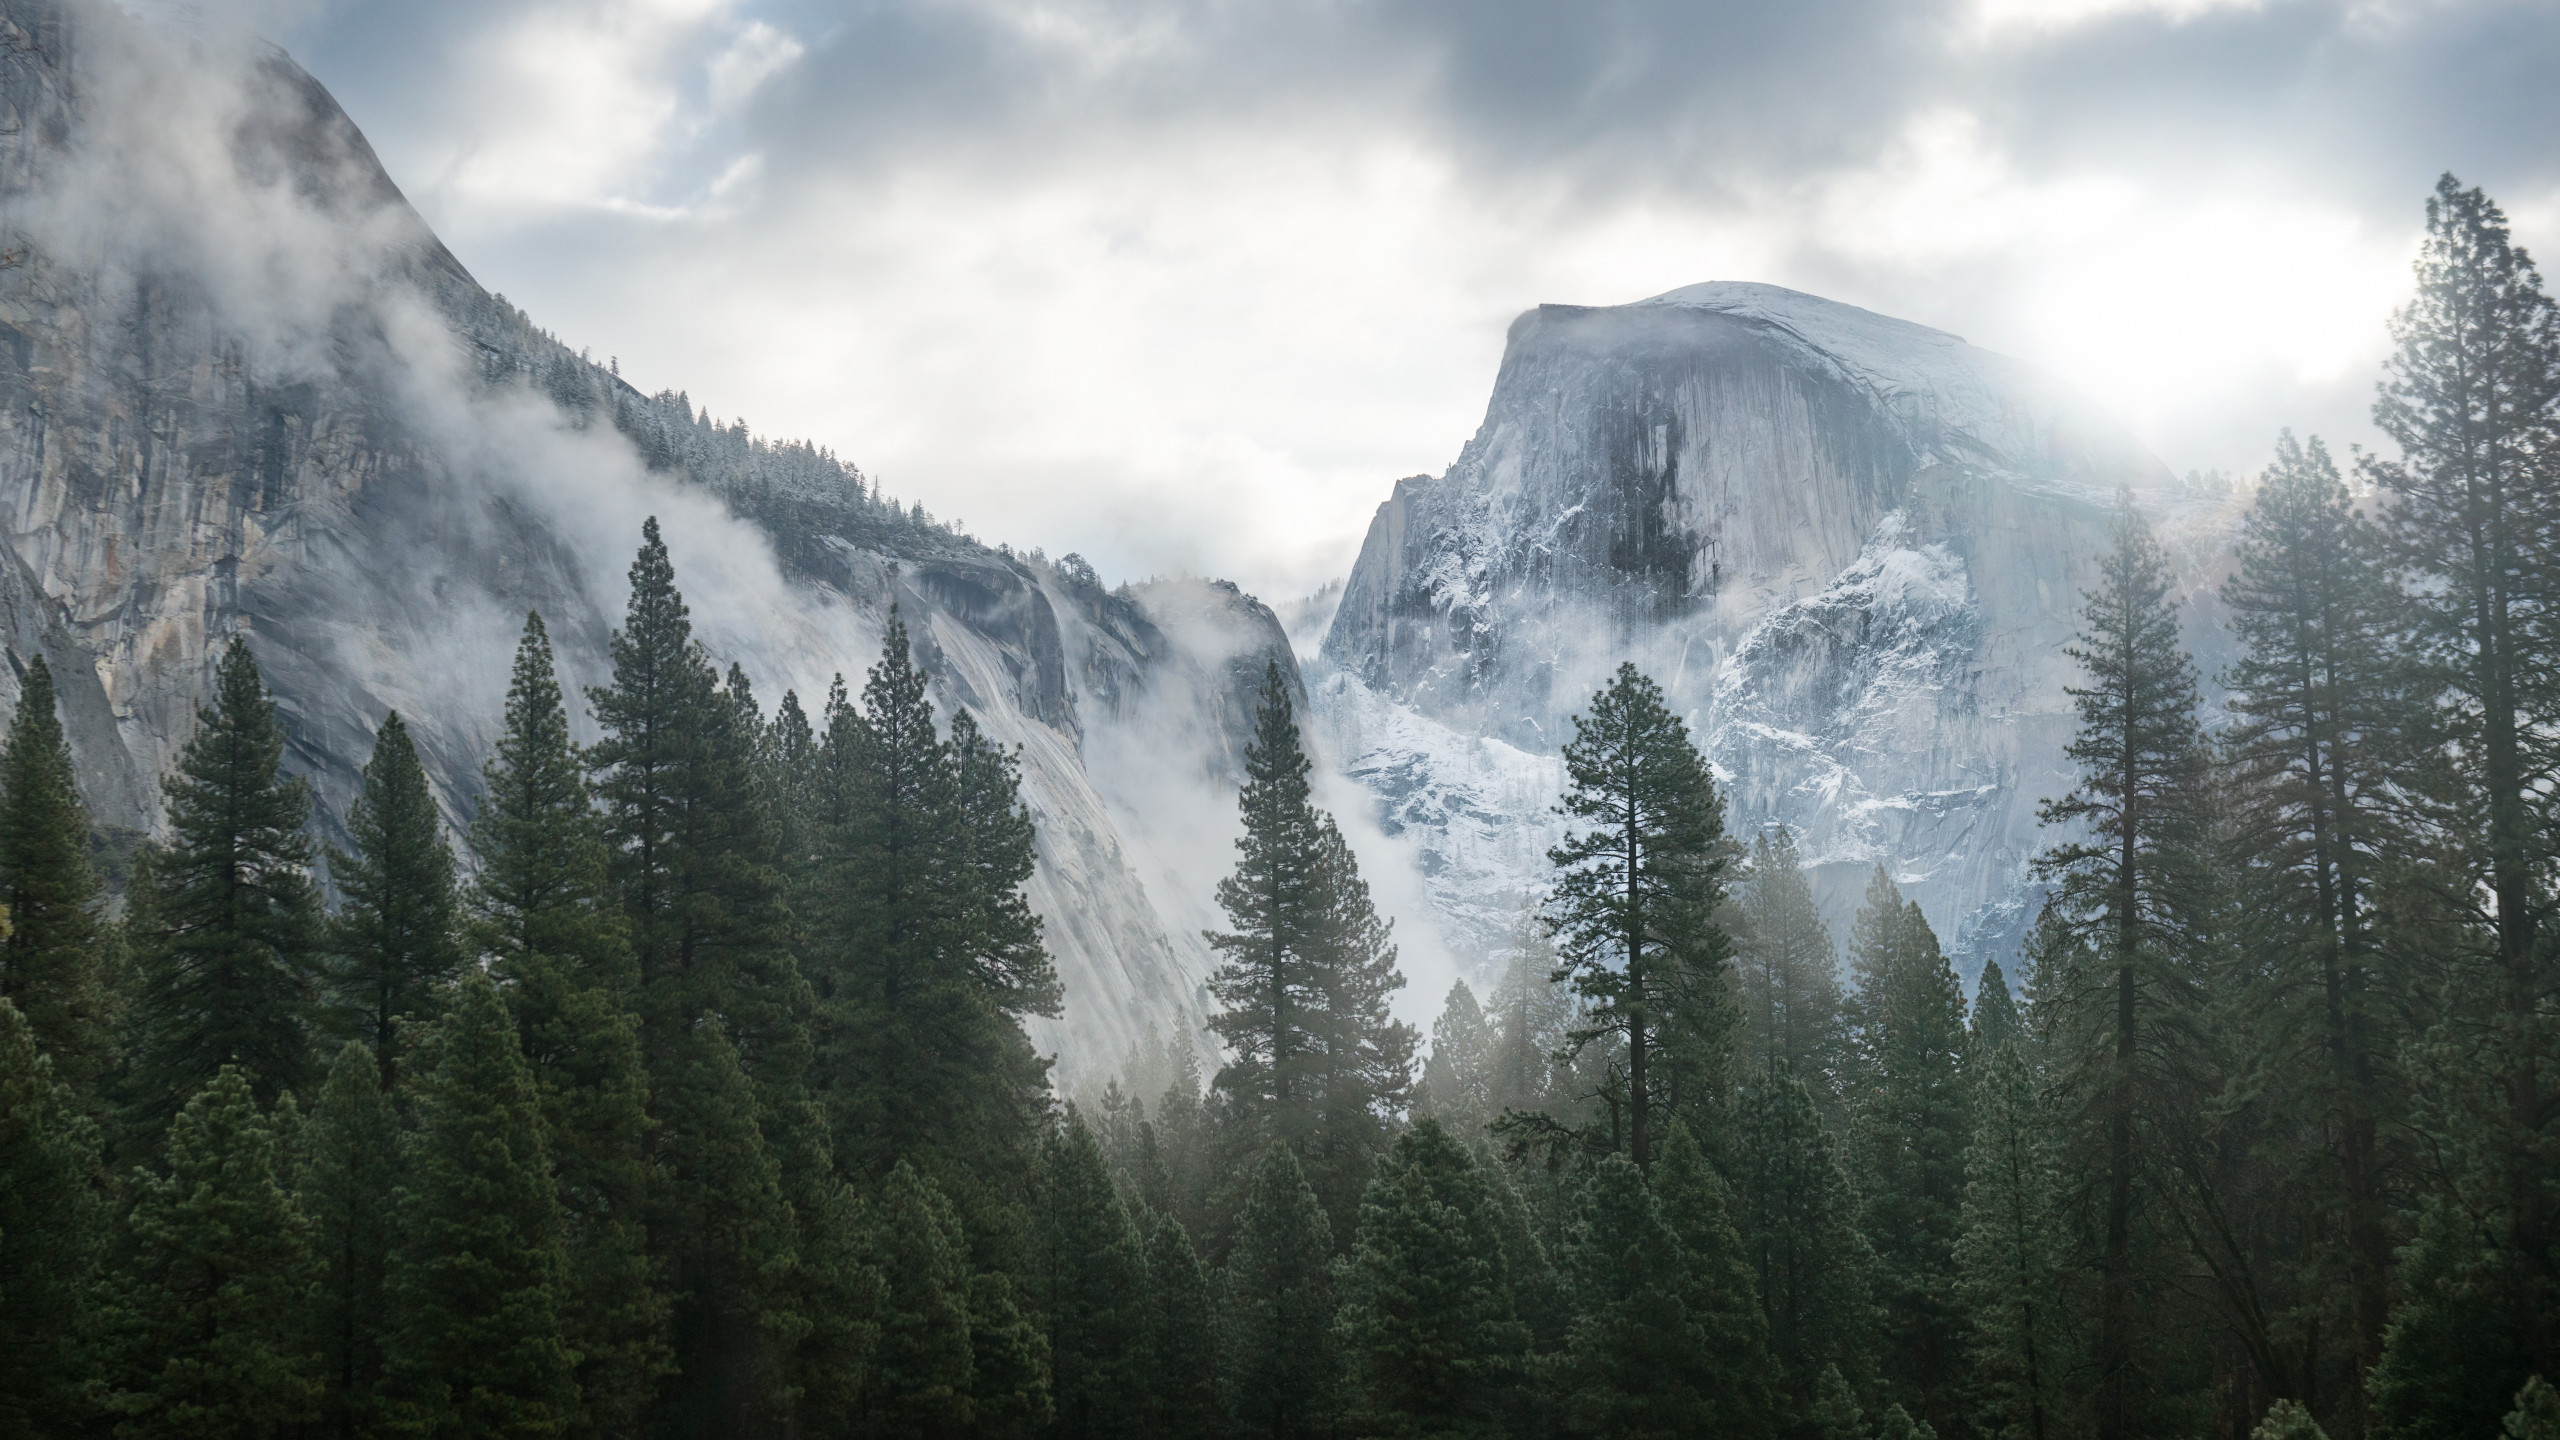 Hình nền Yosemite rừng là sự kết hợp giữa thiên nhiên hoang sơ và độc đáo của khu rừng Yosemite. Hãy cùng đắm mình trong vẻ đẹp hoang dã và tuyệt vời của rừng Yosemite thông qua các hình nền đầy ấn tượng này.